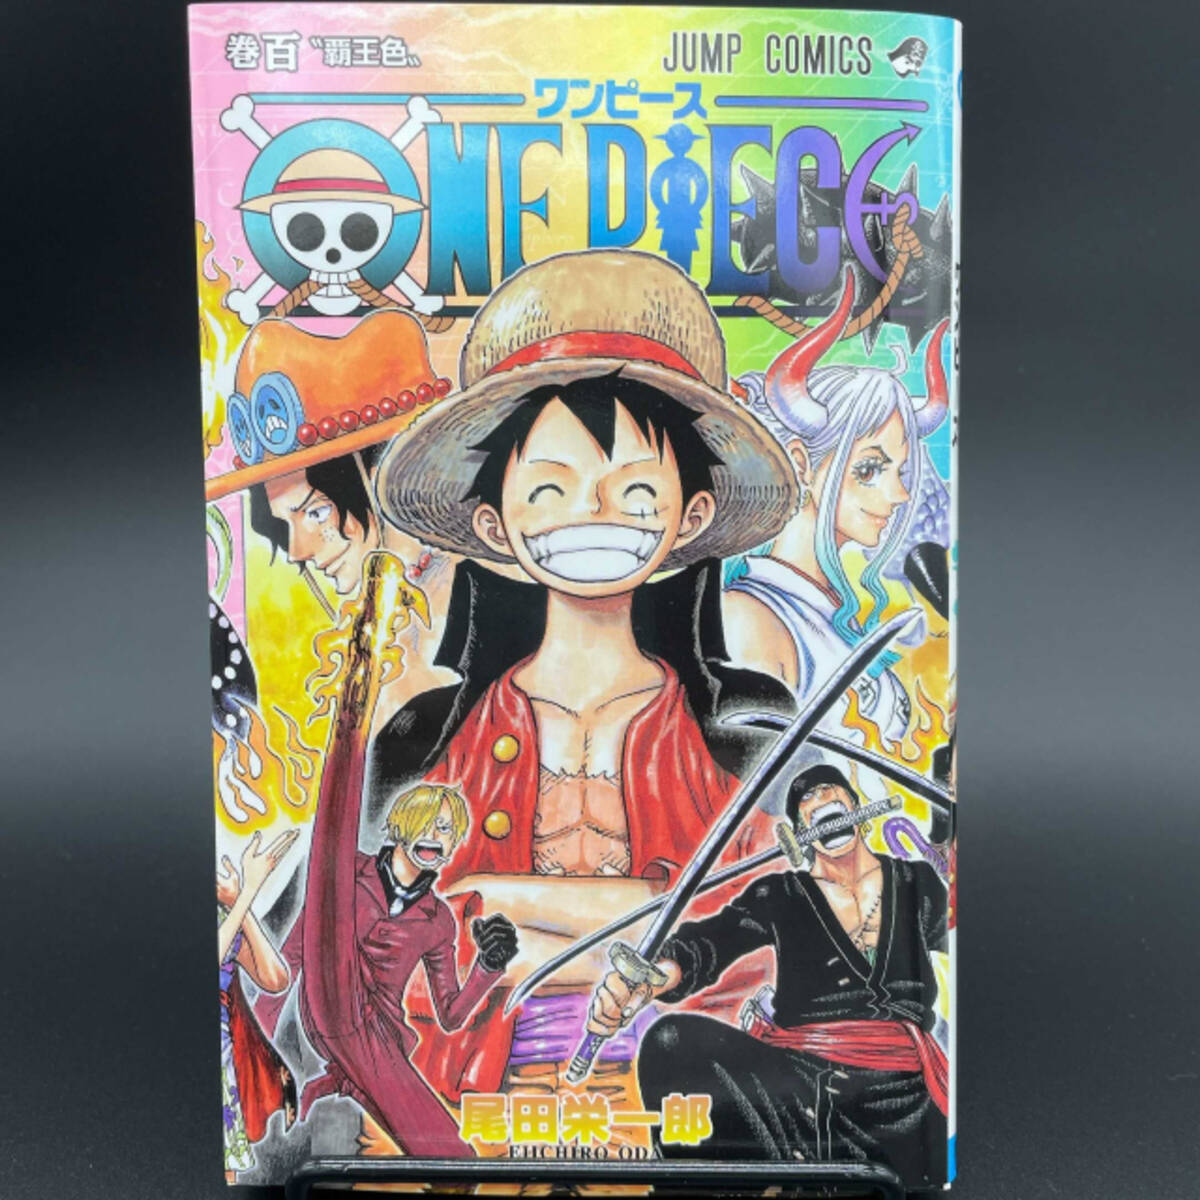 One Piece 生きとったんかワレ 実は死んでいなかったキャラ 3選 21年10月19日 エキサイトニュース